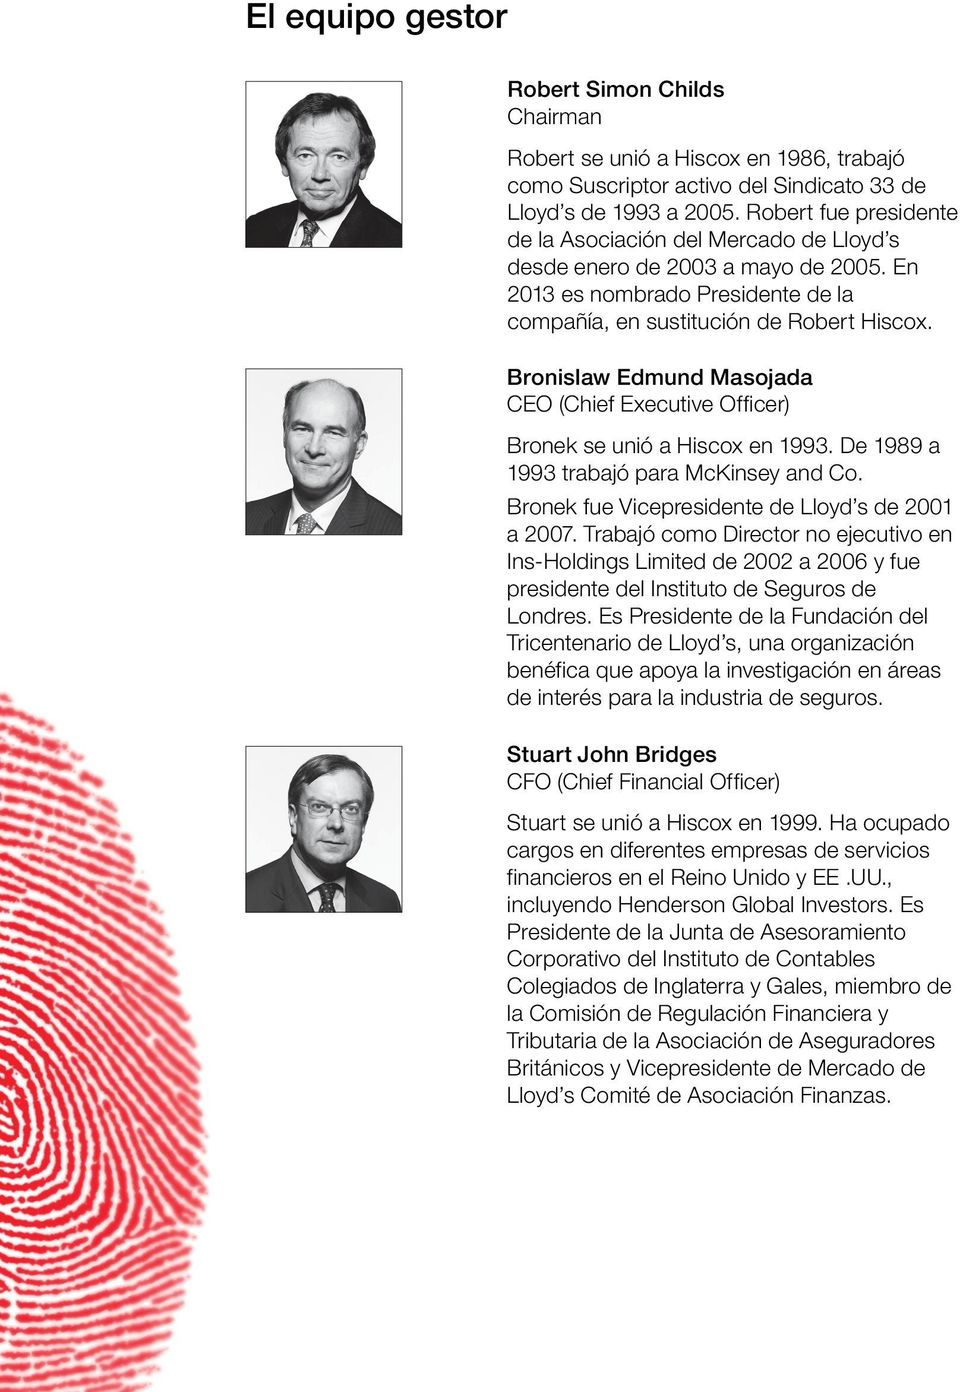 Bronislaw Edmund Masojada CEO (Chief Executive Officer) Bronek se unió a Hiscox en 1993. De 1989 a 1993 trabajó para McKinsey and Co. Bronek fue Vicepresidente de Lloyd s de 2001 a 2007.